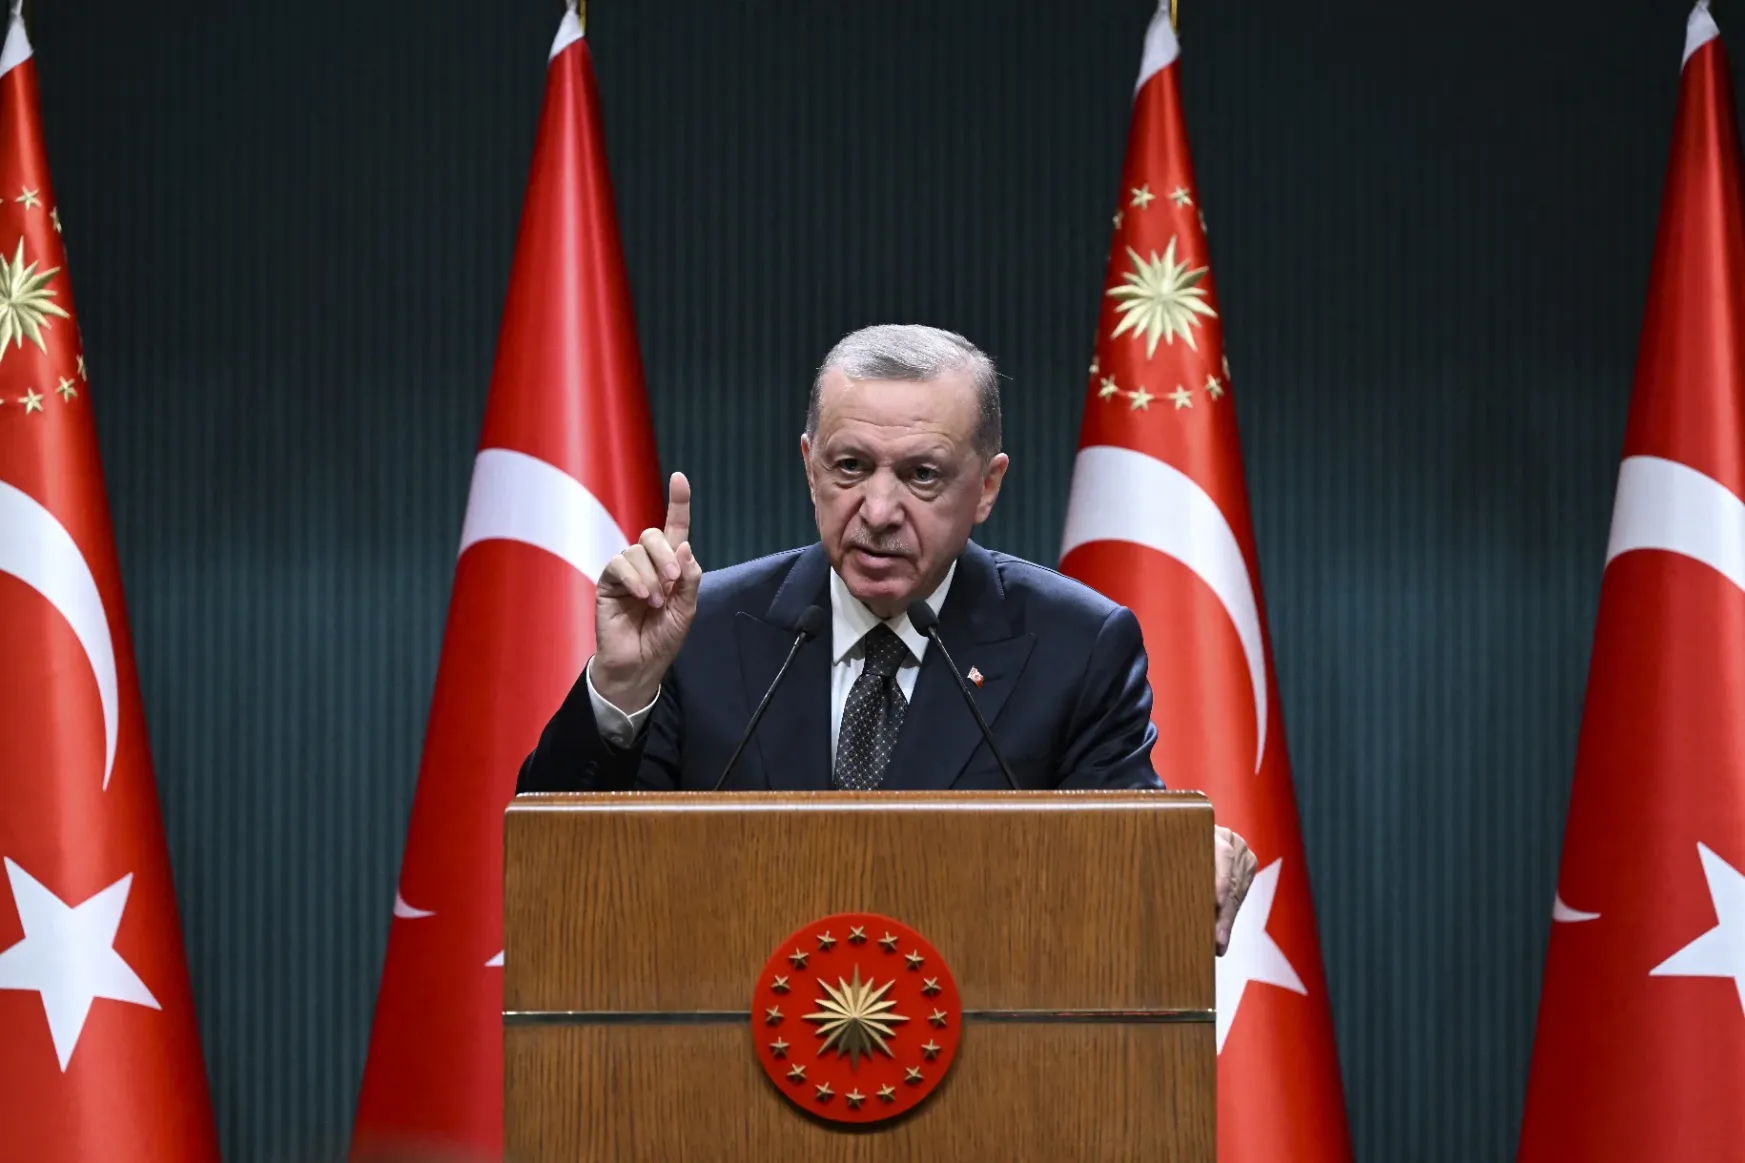 Háború, leszámolás, fenyegetőzés – Erdoğan tényleg bármit megtesz az elnökség megtartásáért